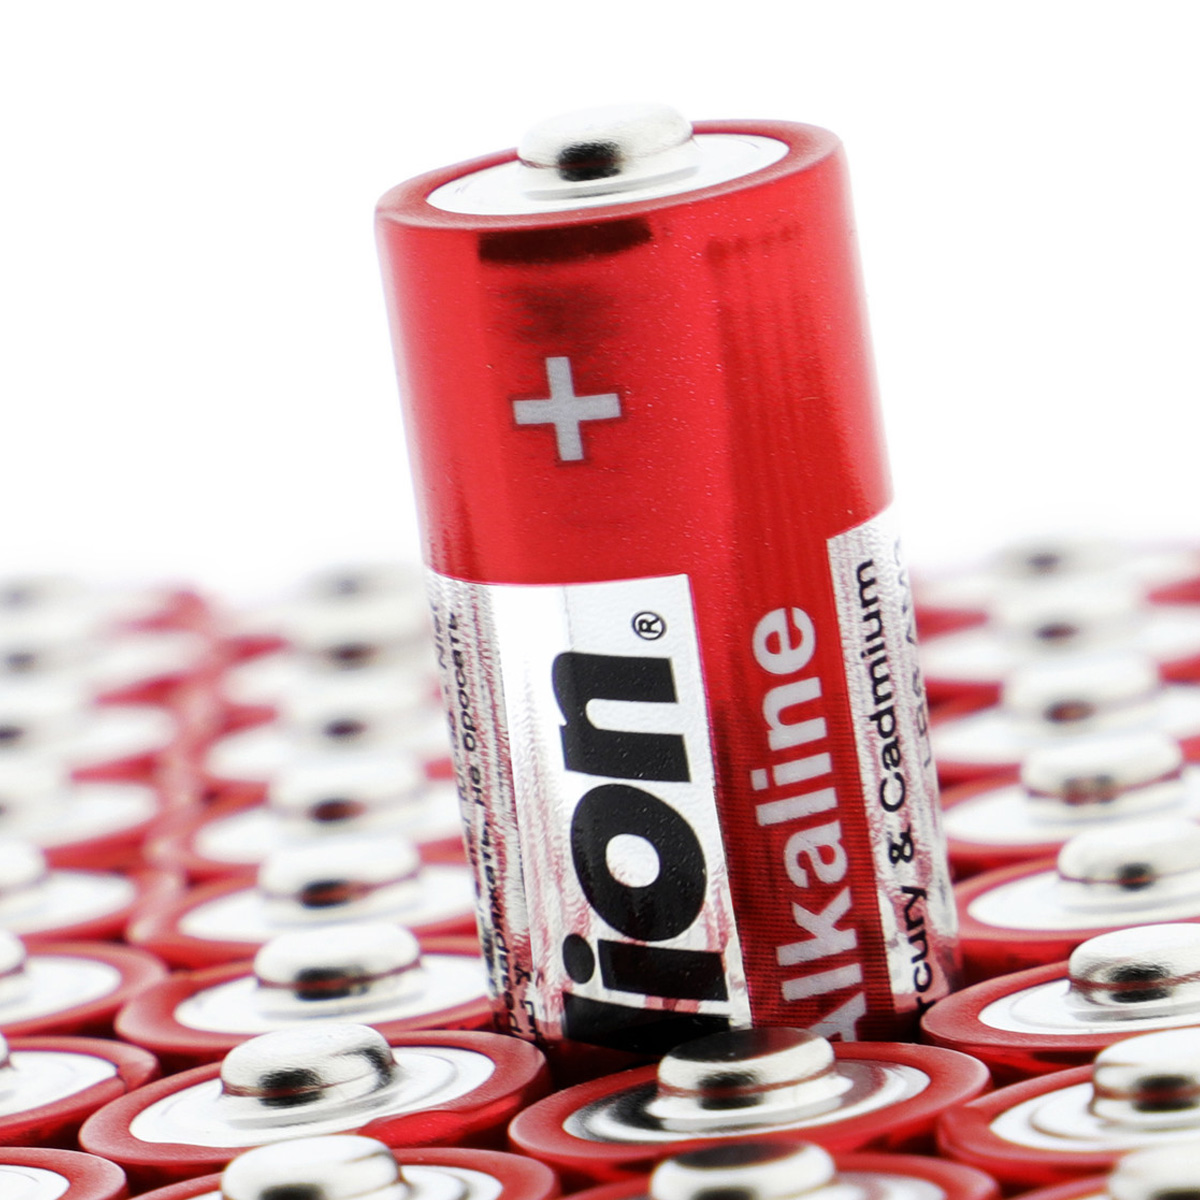 Batterie Mignon AA LR6 1,5V PLUS Alkaline - Leistung auf Dauer - 3 Stück